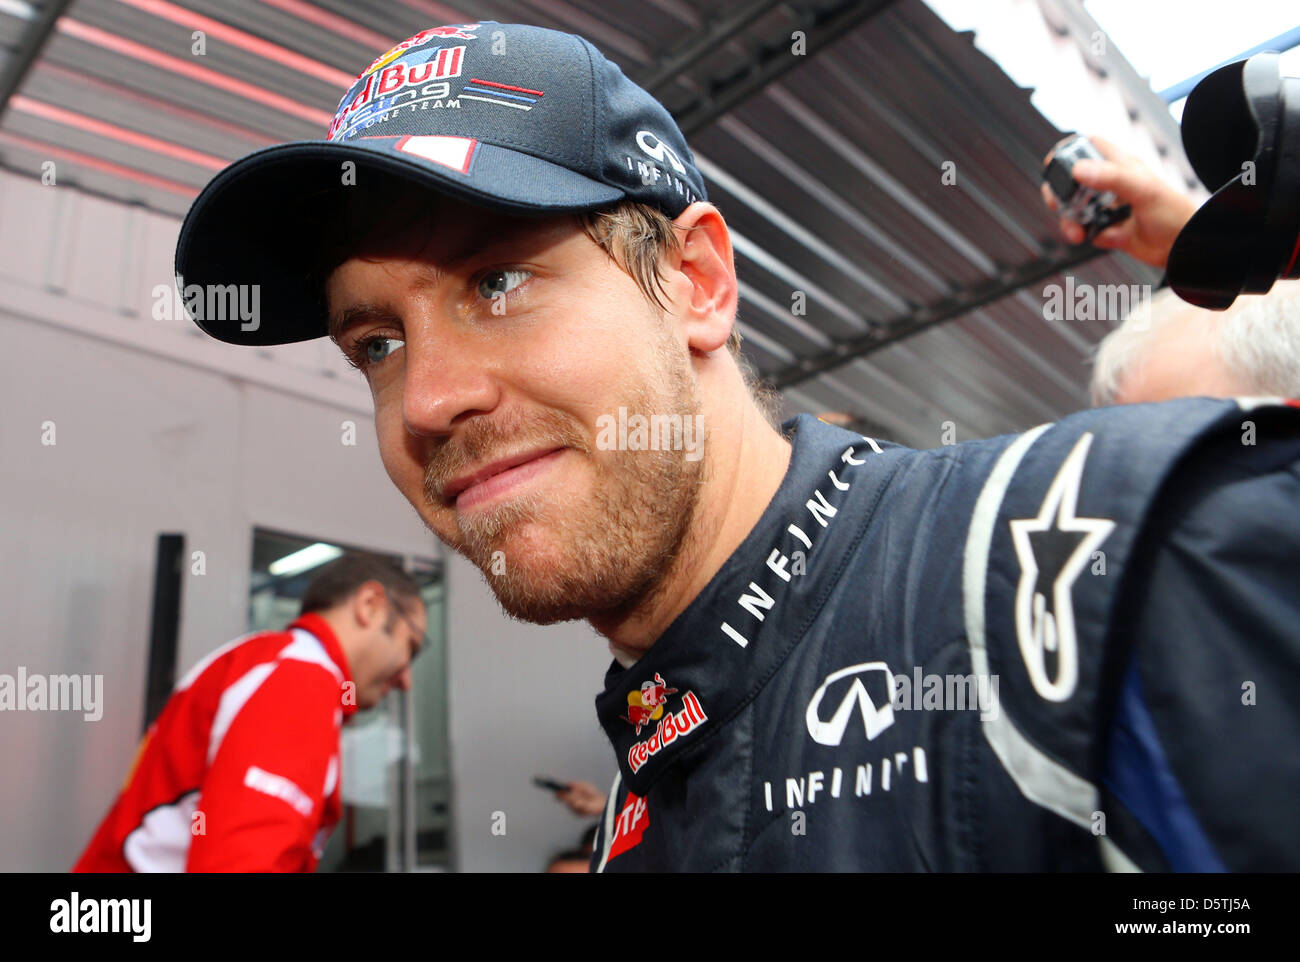 L'allemand Sebastian Vettel, pilote de Formule 1 de Red Bull vu après le Grand Prix de Formule 1 du Brésil à l'Autodromo Jose Carlos Pace à Sao Paulo, Brésil, 25 novembre 2012. Photo : Jens Buettner/dpa  + + +(c) afp - Bildfunk + + + Banque D'Images